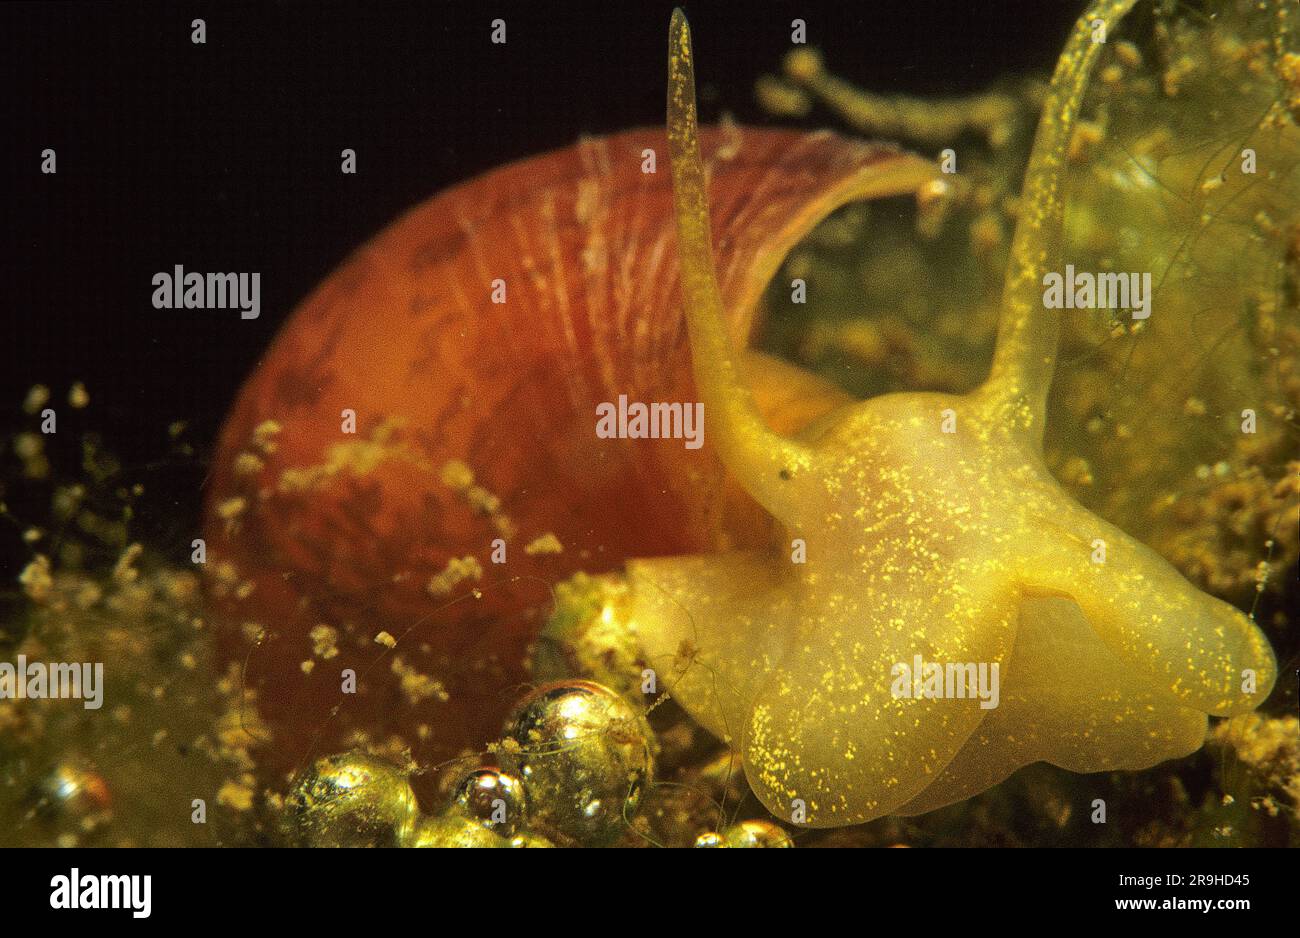 Escargot d'eau douce, escargot errant (Lymnaea stagnalis), Bade-Wurtemberg, Allemagne, Europe Banque D'Images